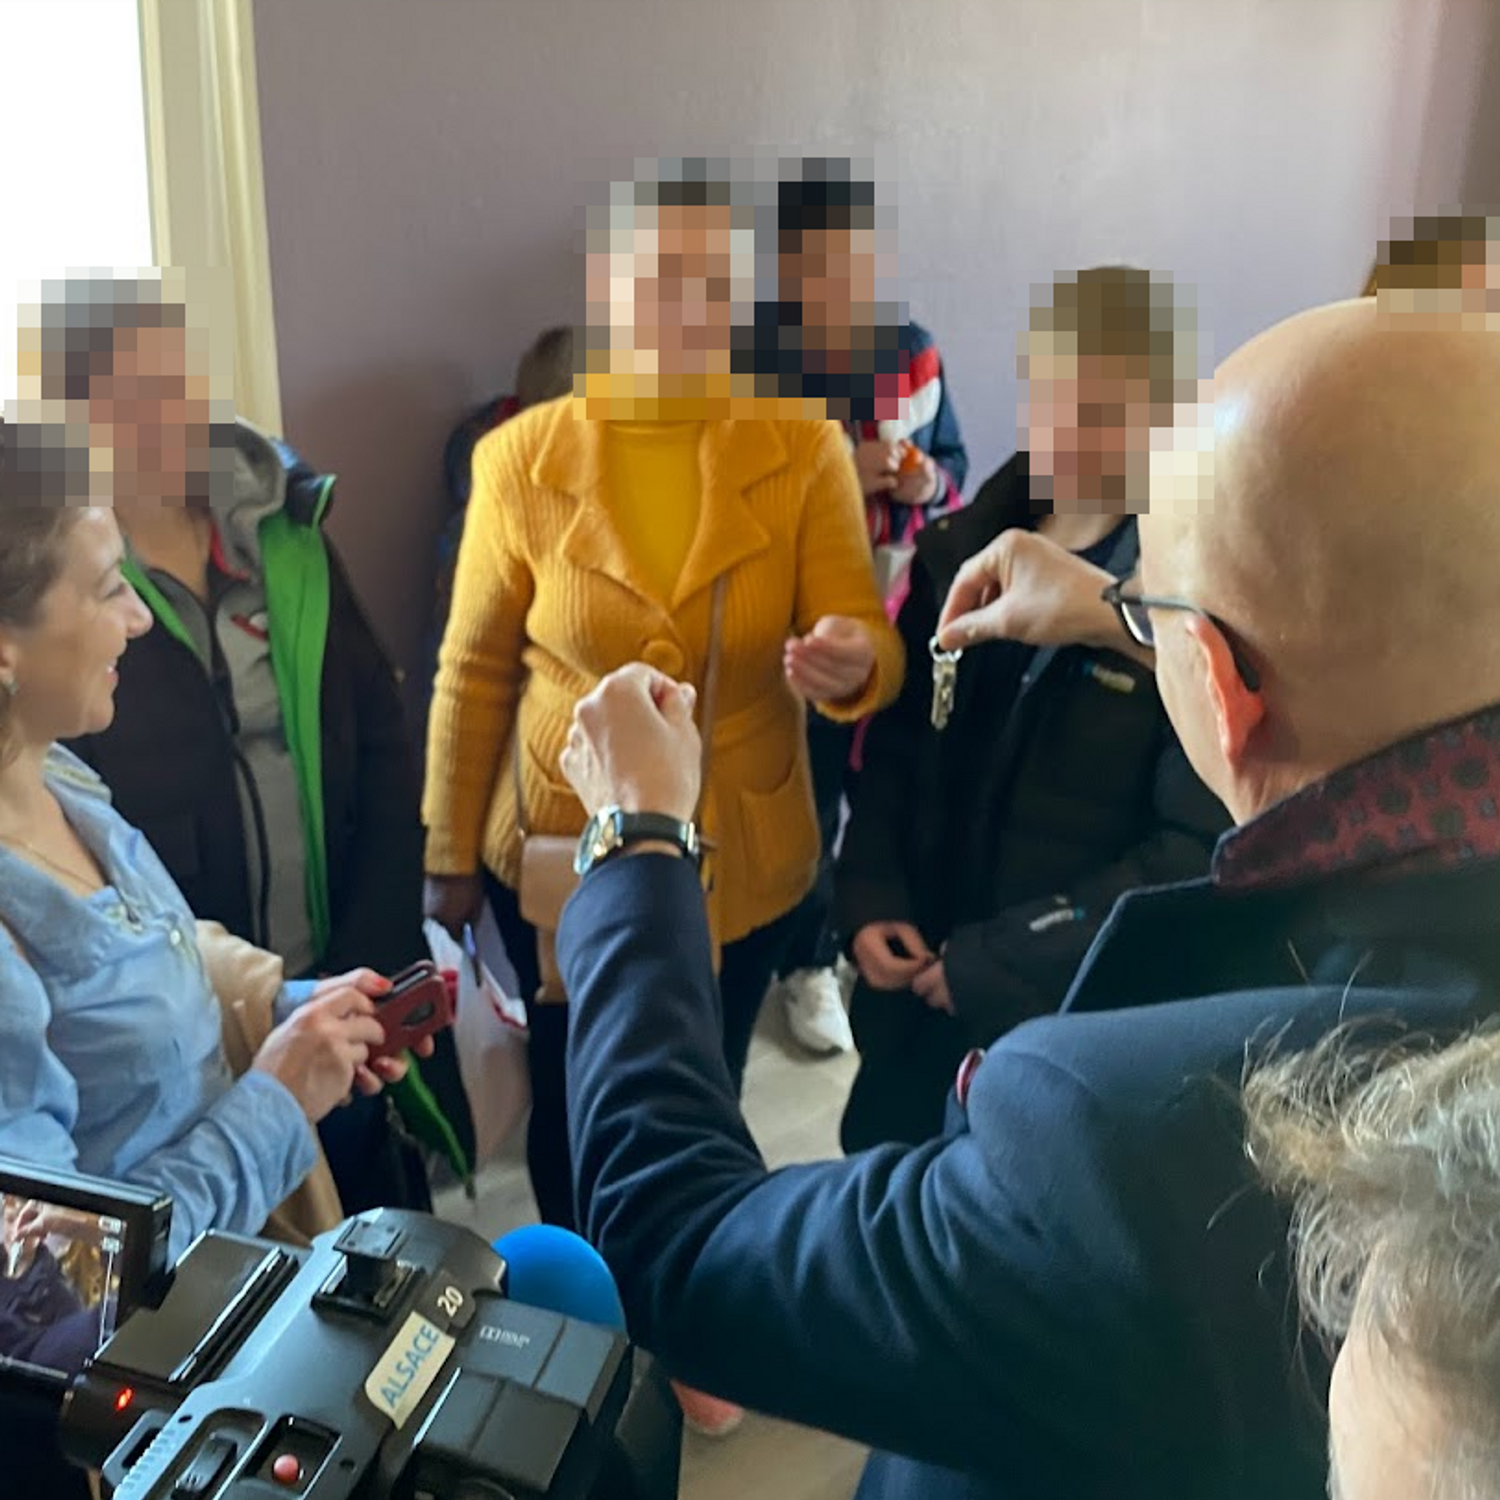 remise clés appartement réfugiés ukrainiens collège Strasbourg mars 2022